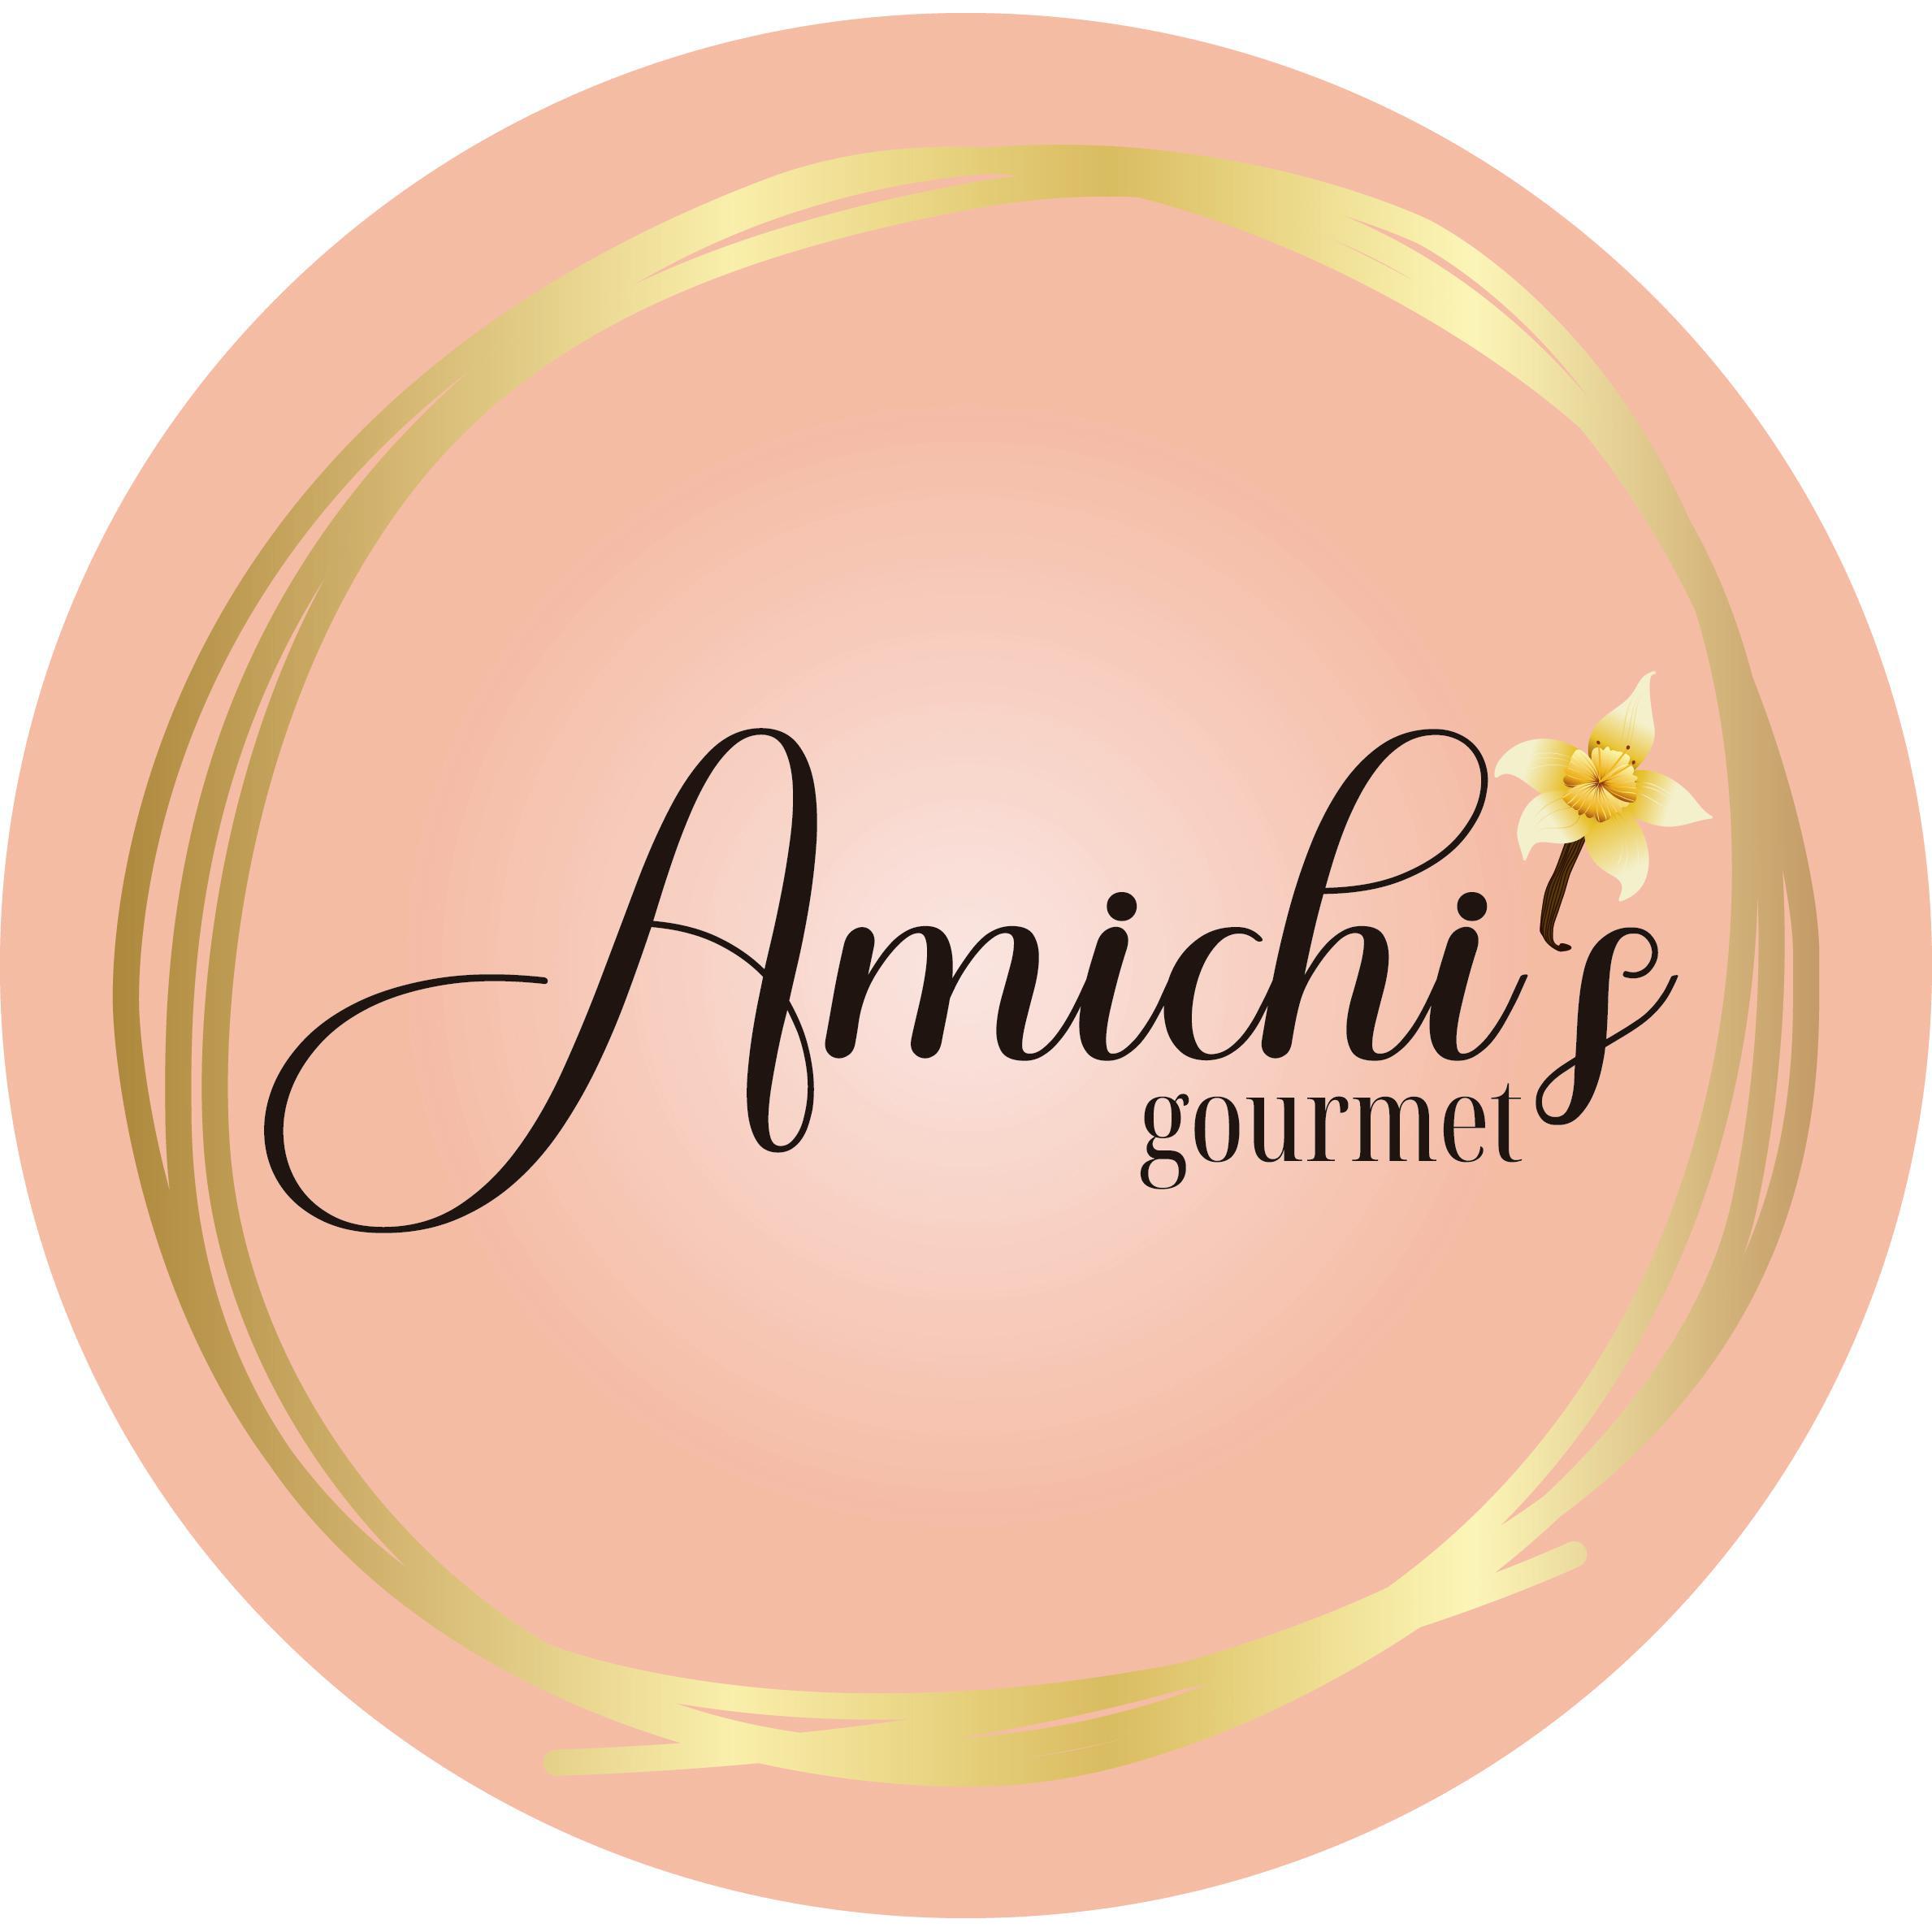 Amichi's Gourmet y San Antonio Pork Godella